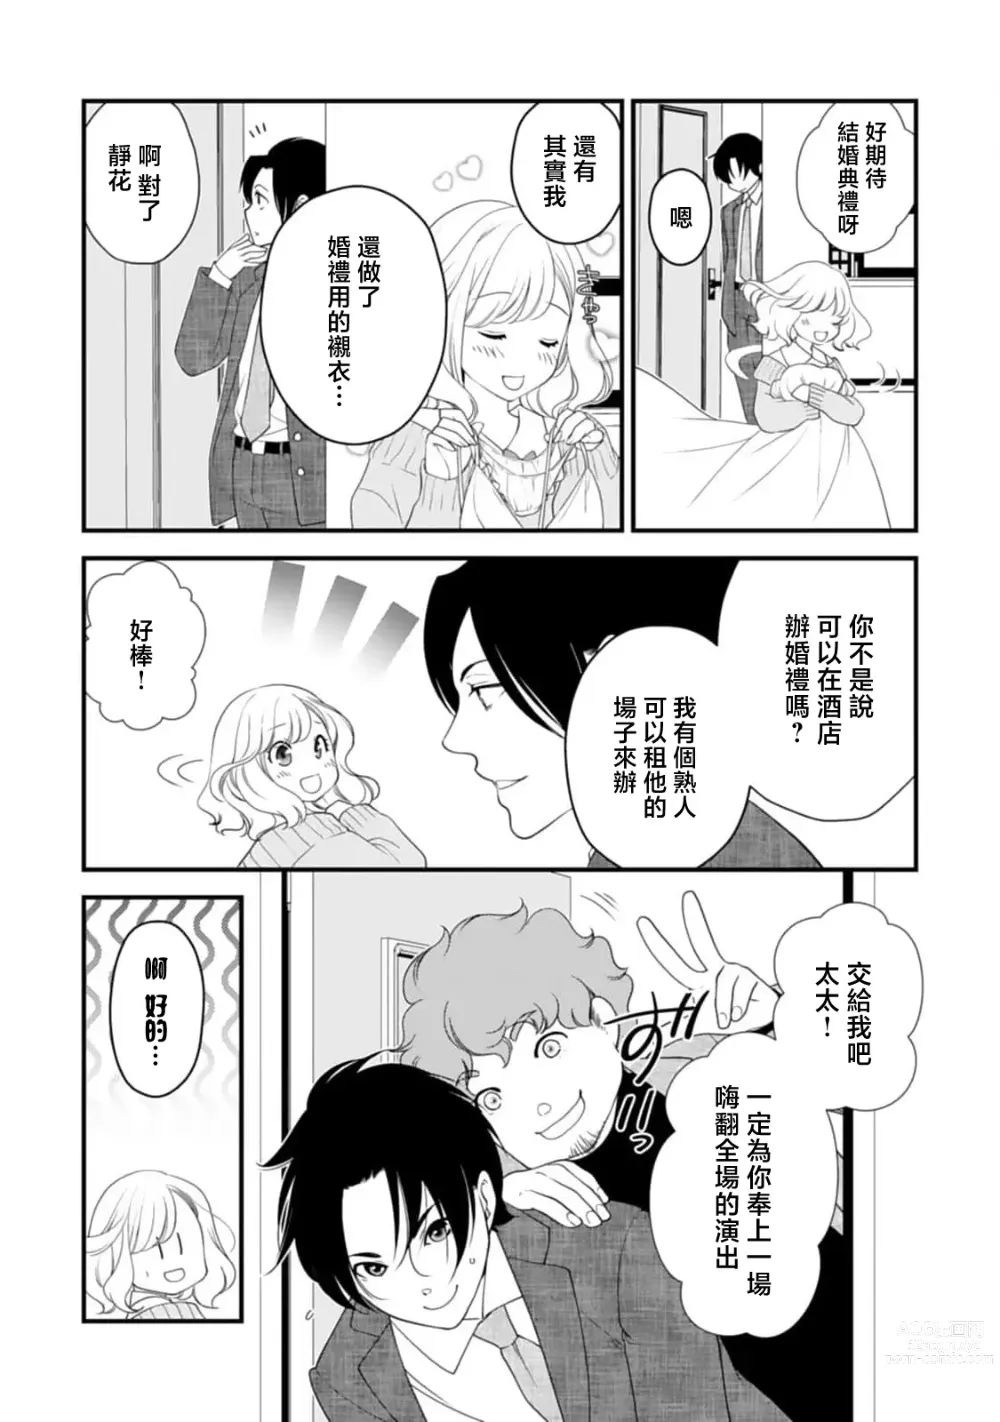 Page 3 of manga 被众人围观的豹变结婚典礼，新娘想夺回最爱的丈夫